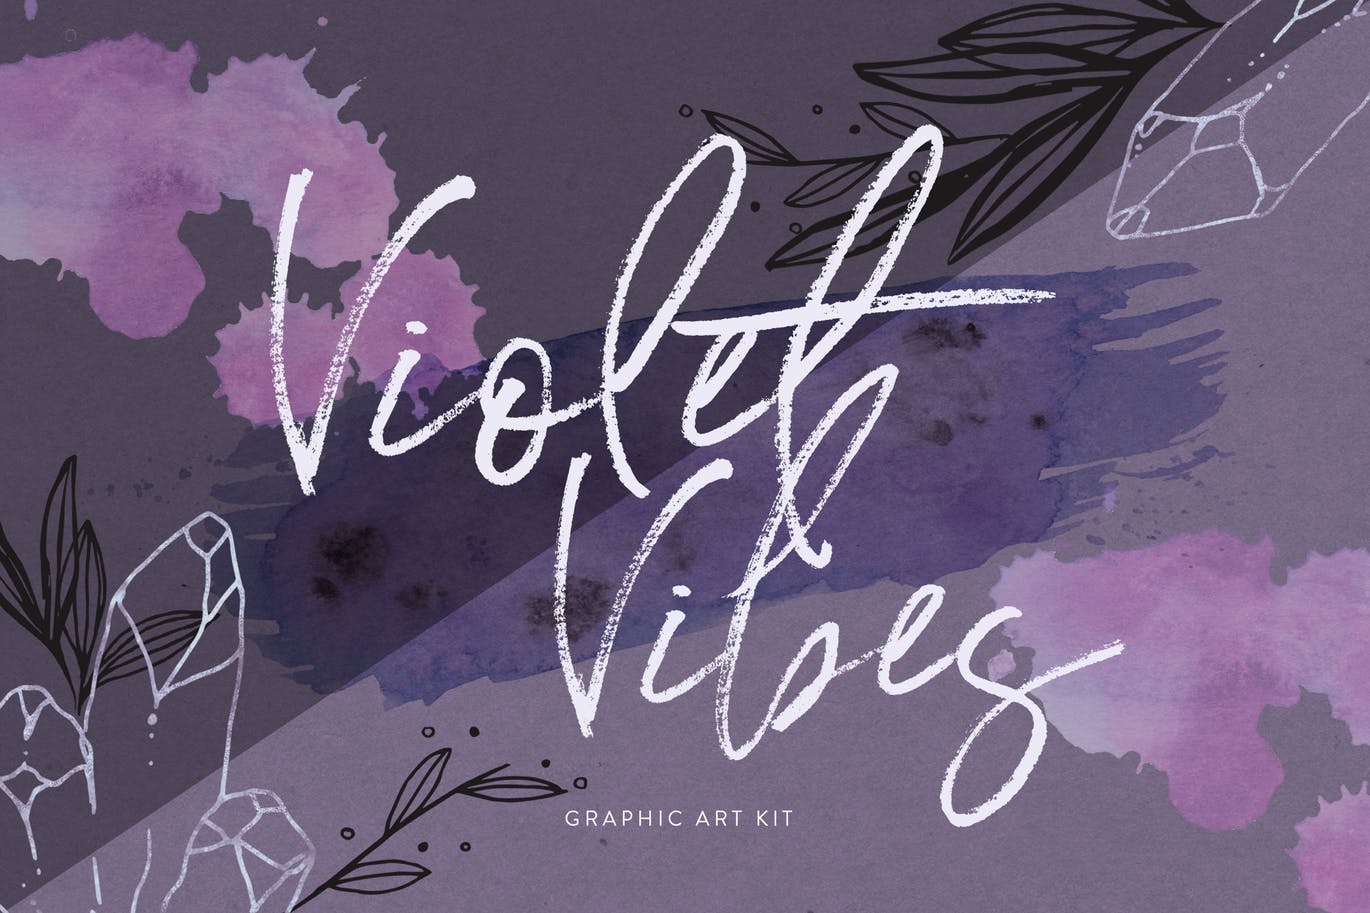 紫罗兰色时尚水彩手绘设计套件 Violet Vibes Graphic Art Kit插图